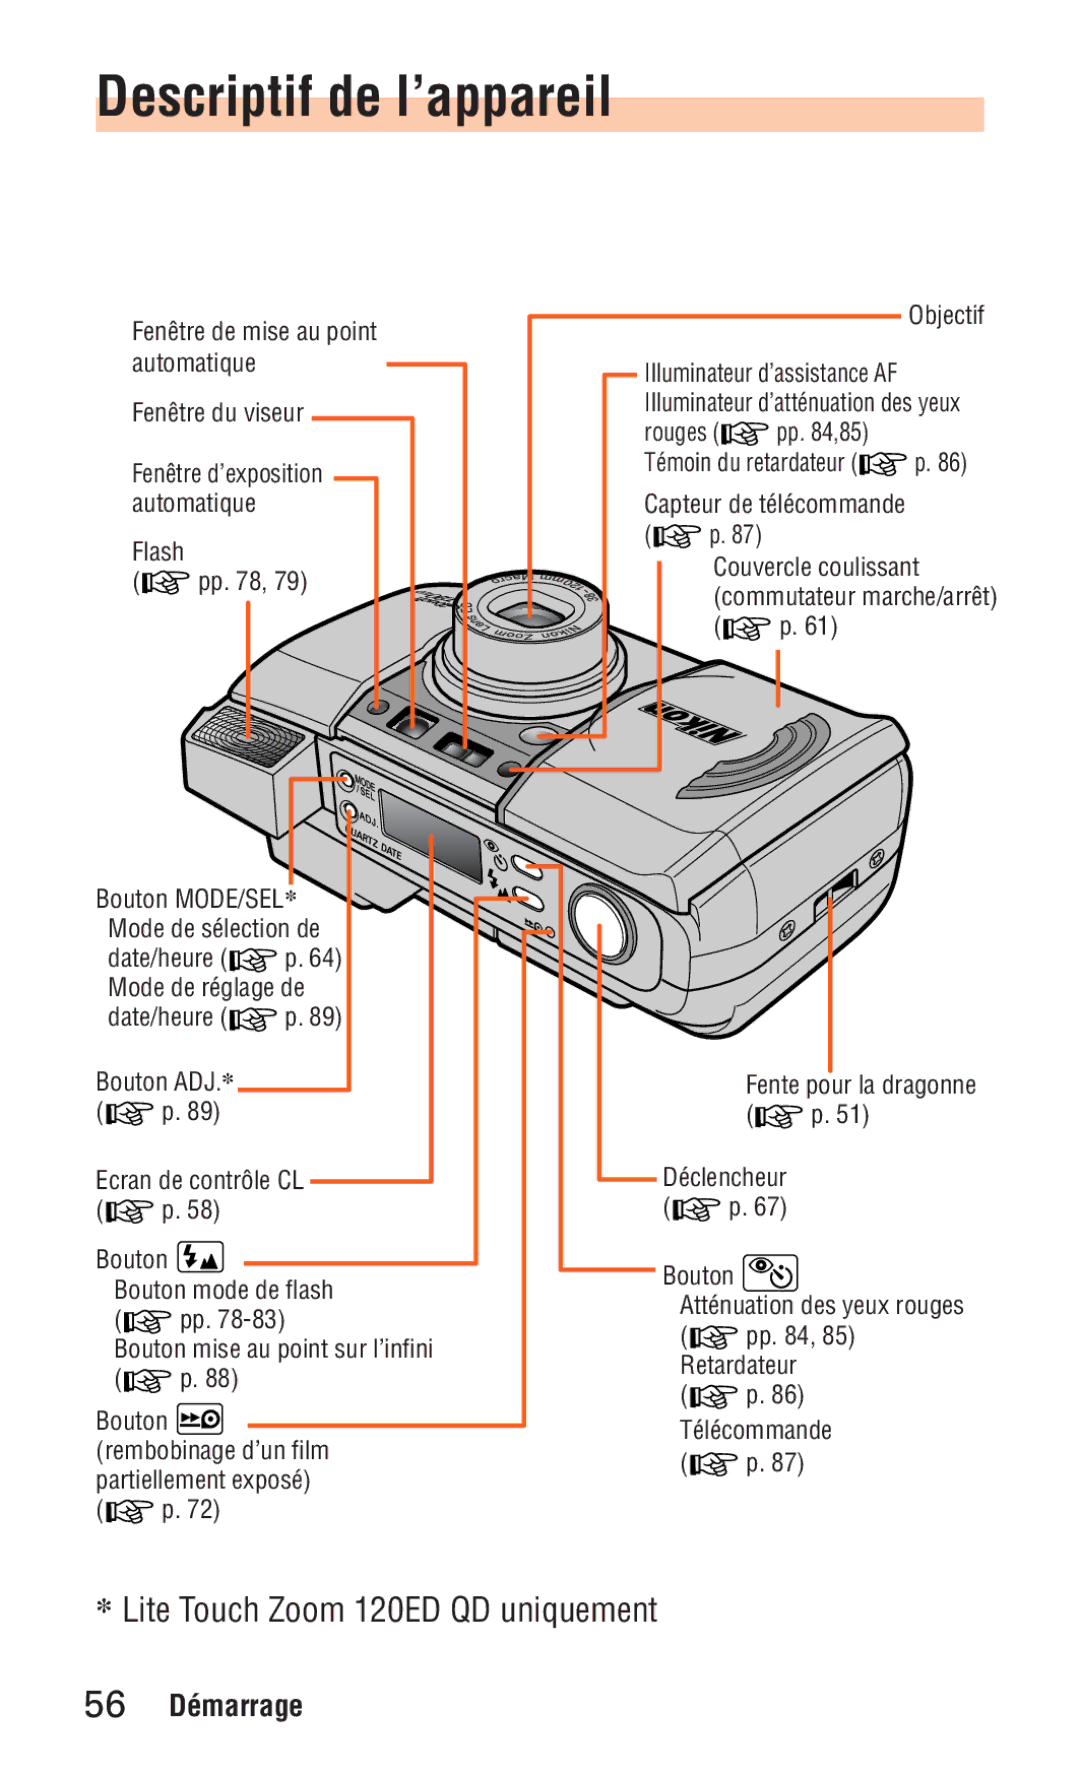 Nikon ED 120 instruction manual Descriptif de l’appareil, Lite Touch Zoom 120ED QD uniquement 